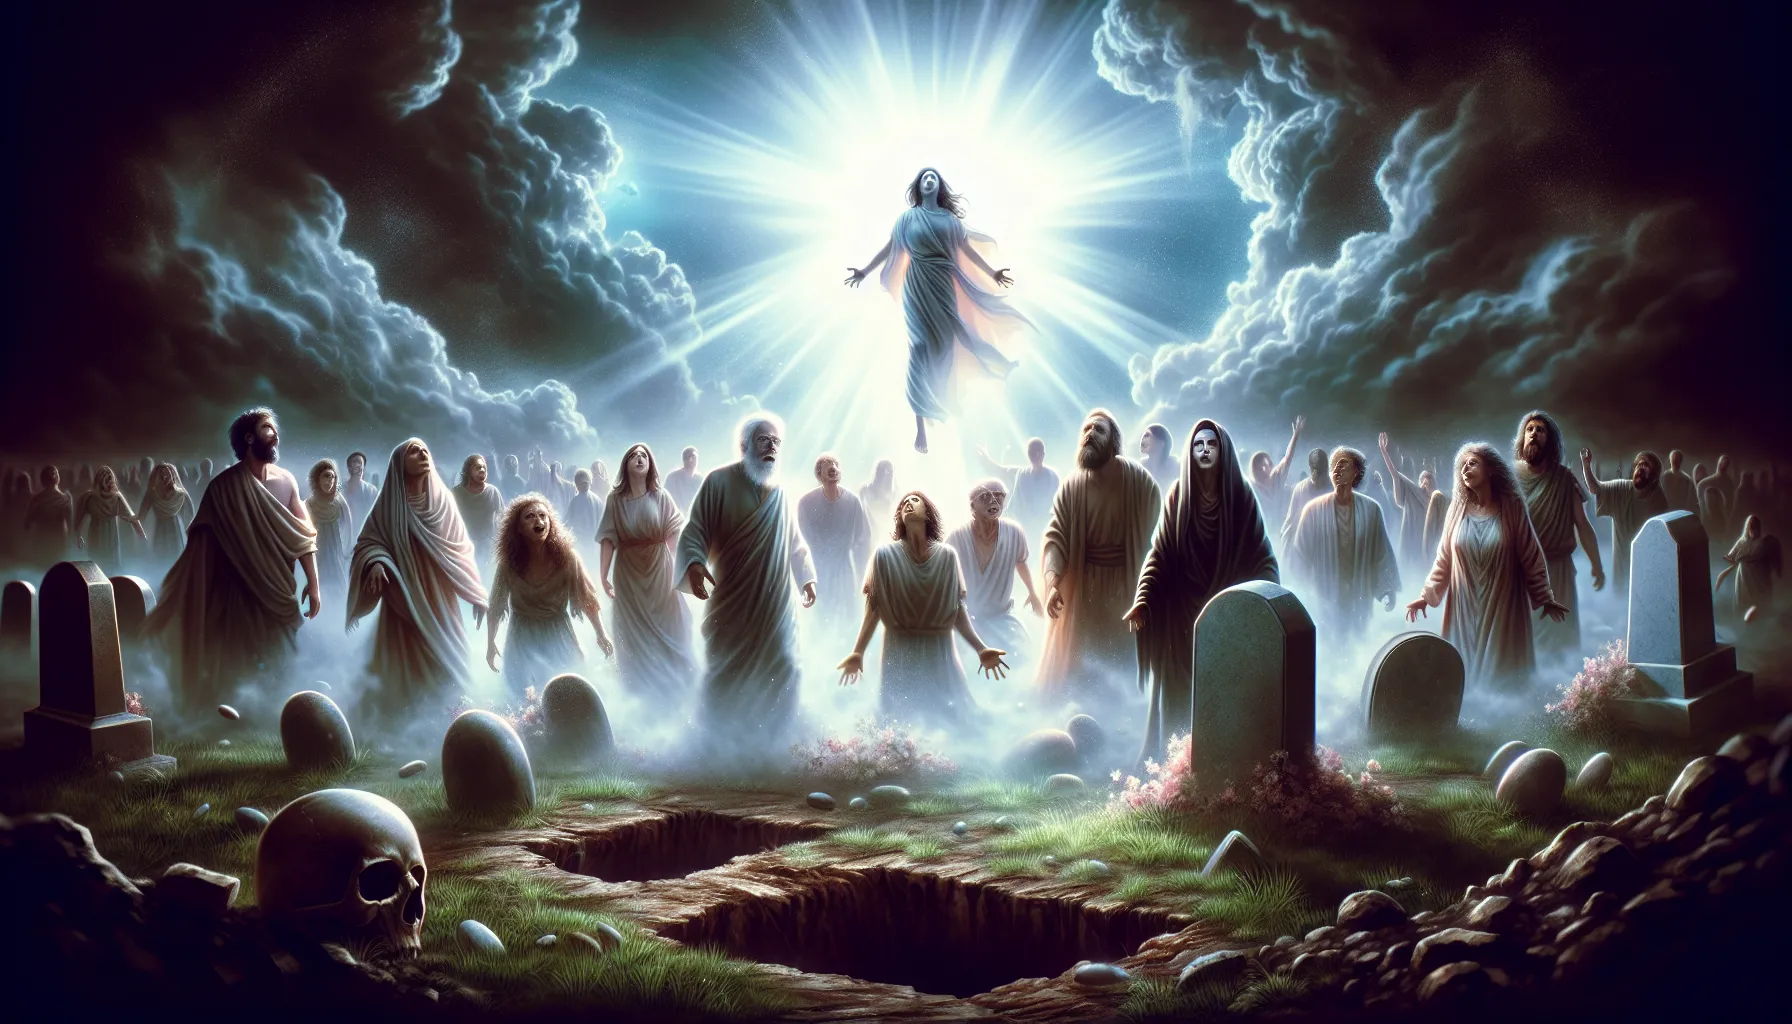 Ilustración representativa de la resurrección de los muertos según la Biblia'.